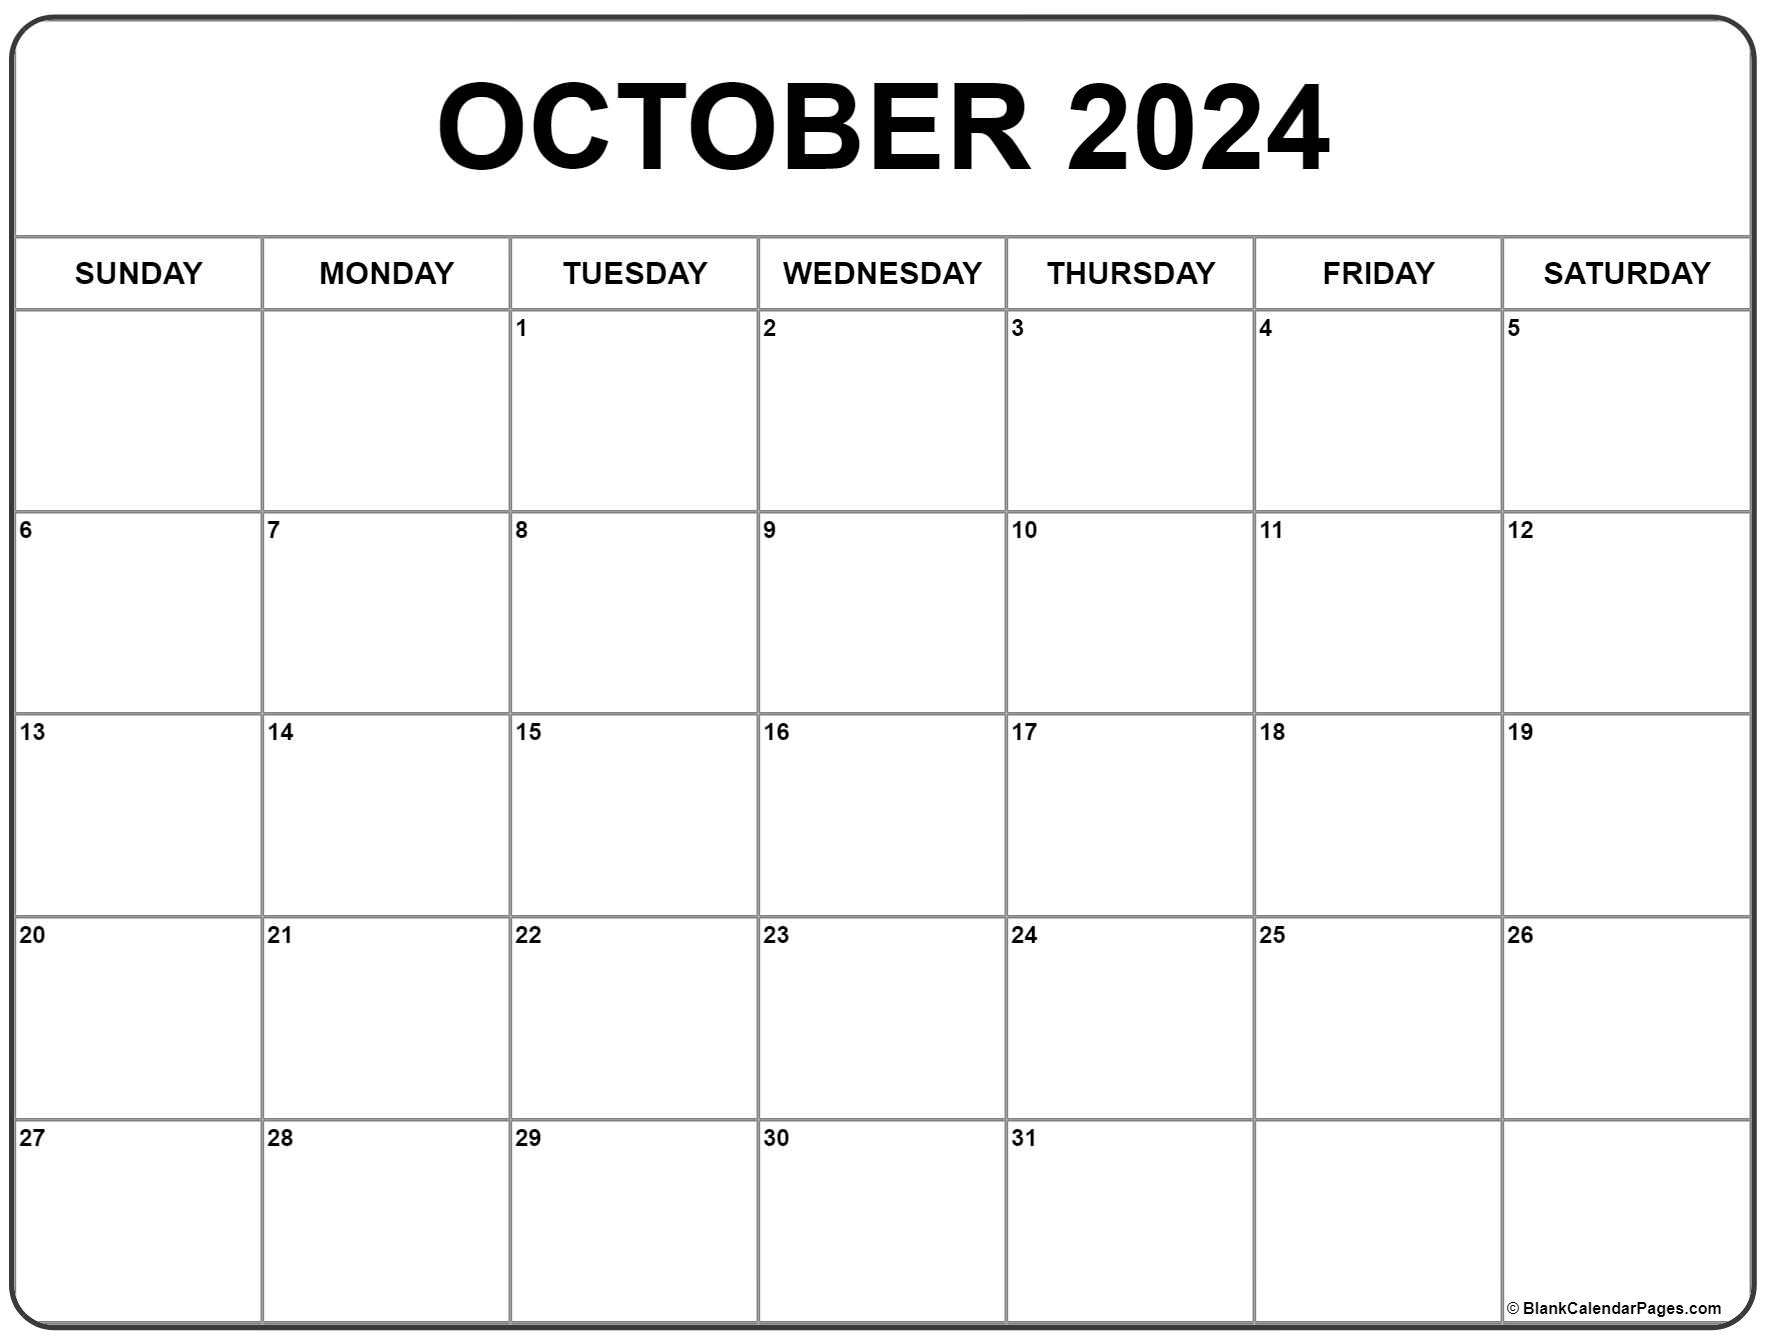 October 2024 Calendar | Free Printable Calendar intended for Free Printable Calendar 2024 October November December